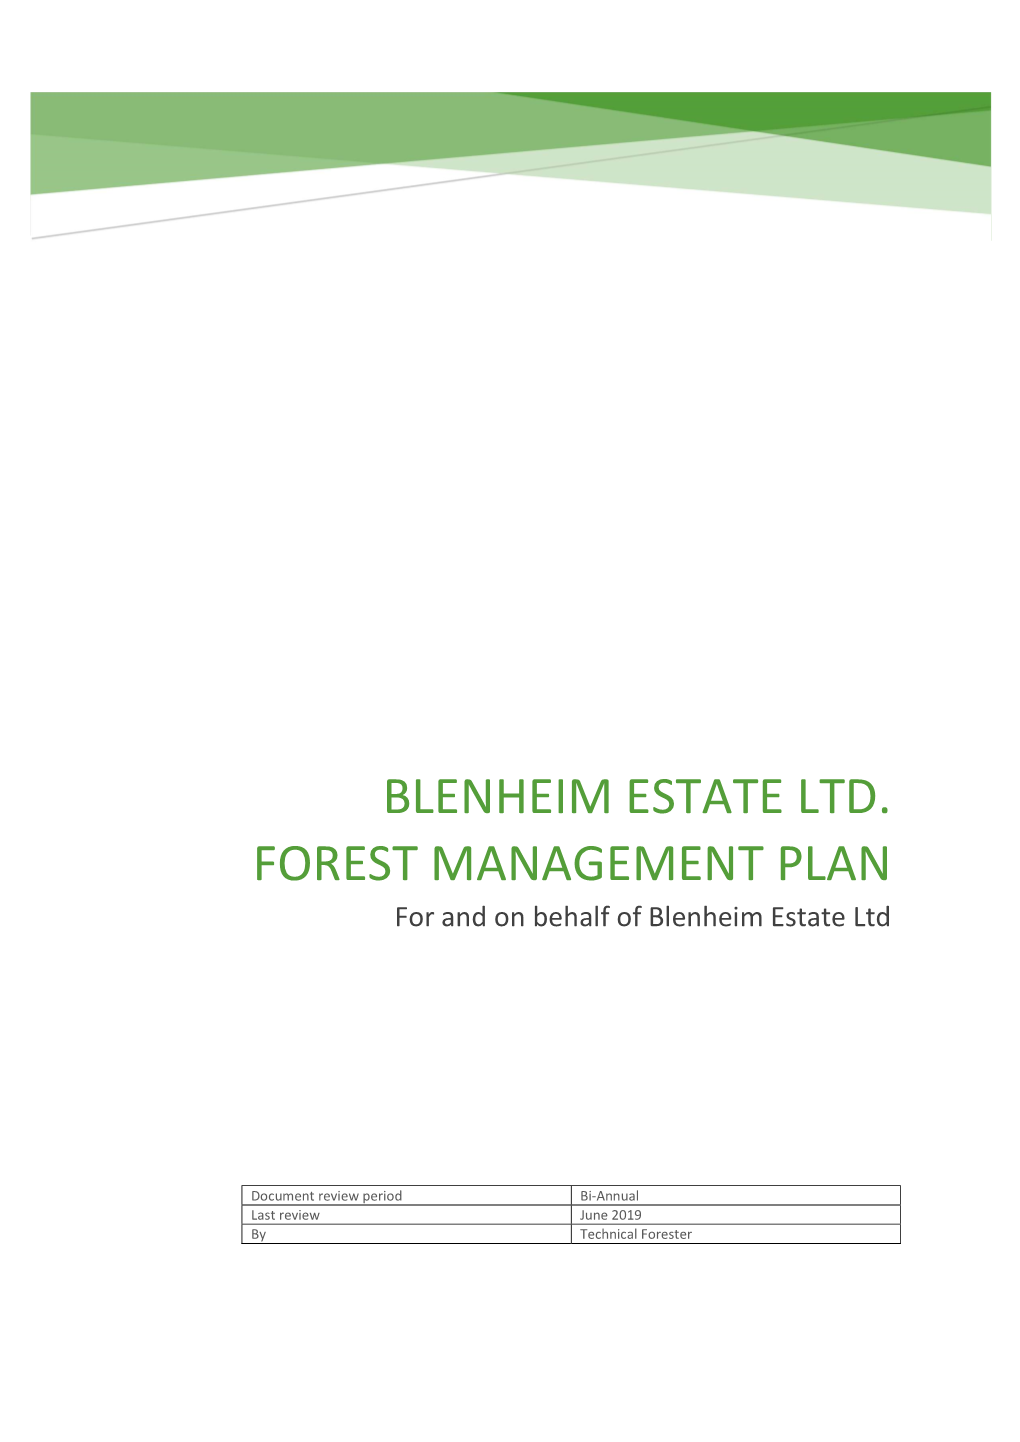 BLENHEIM ESTATE LTD. FOREST MANAGEMENT PLAN for and on Behalf of Blenheim Estate Ltd